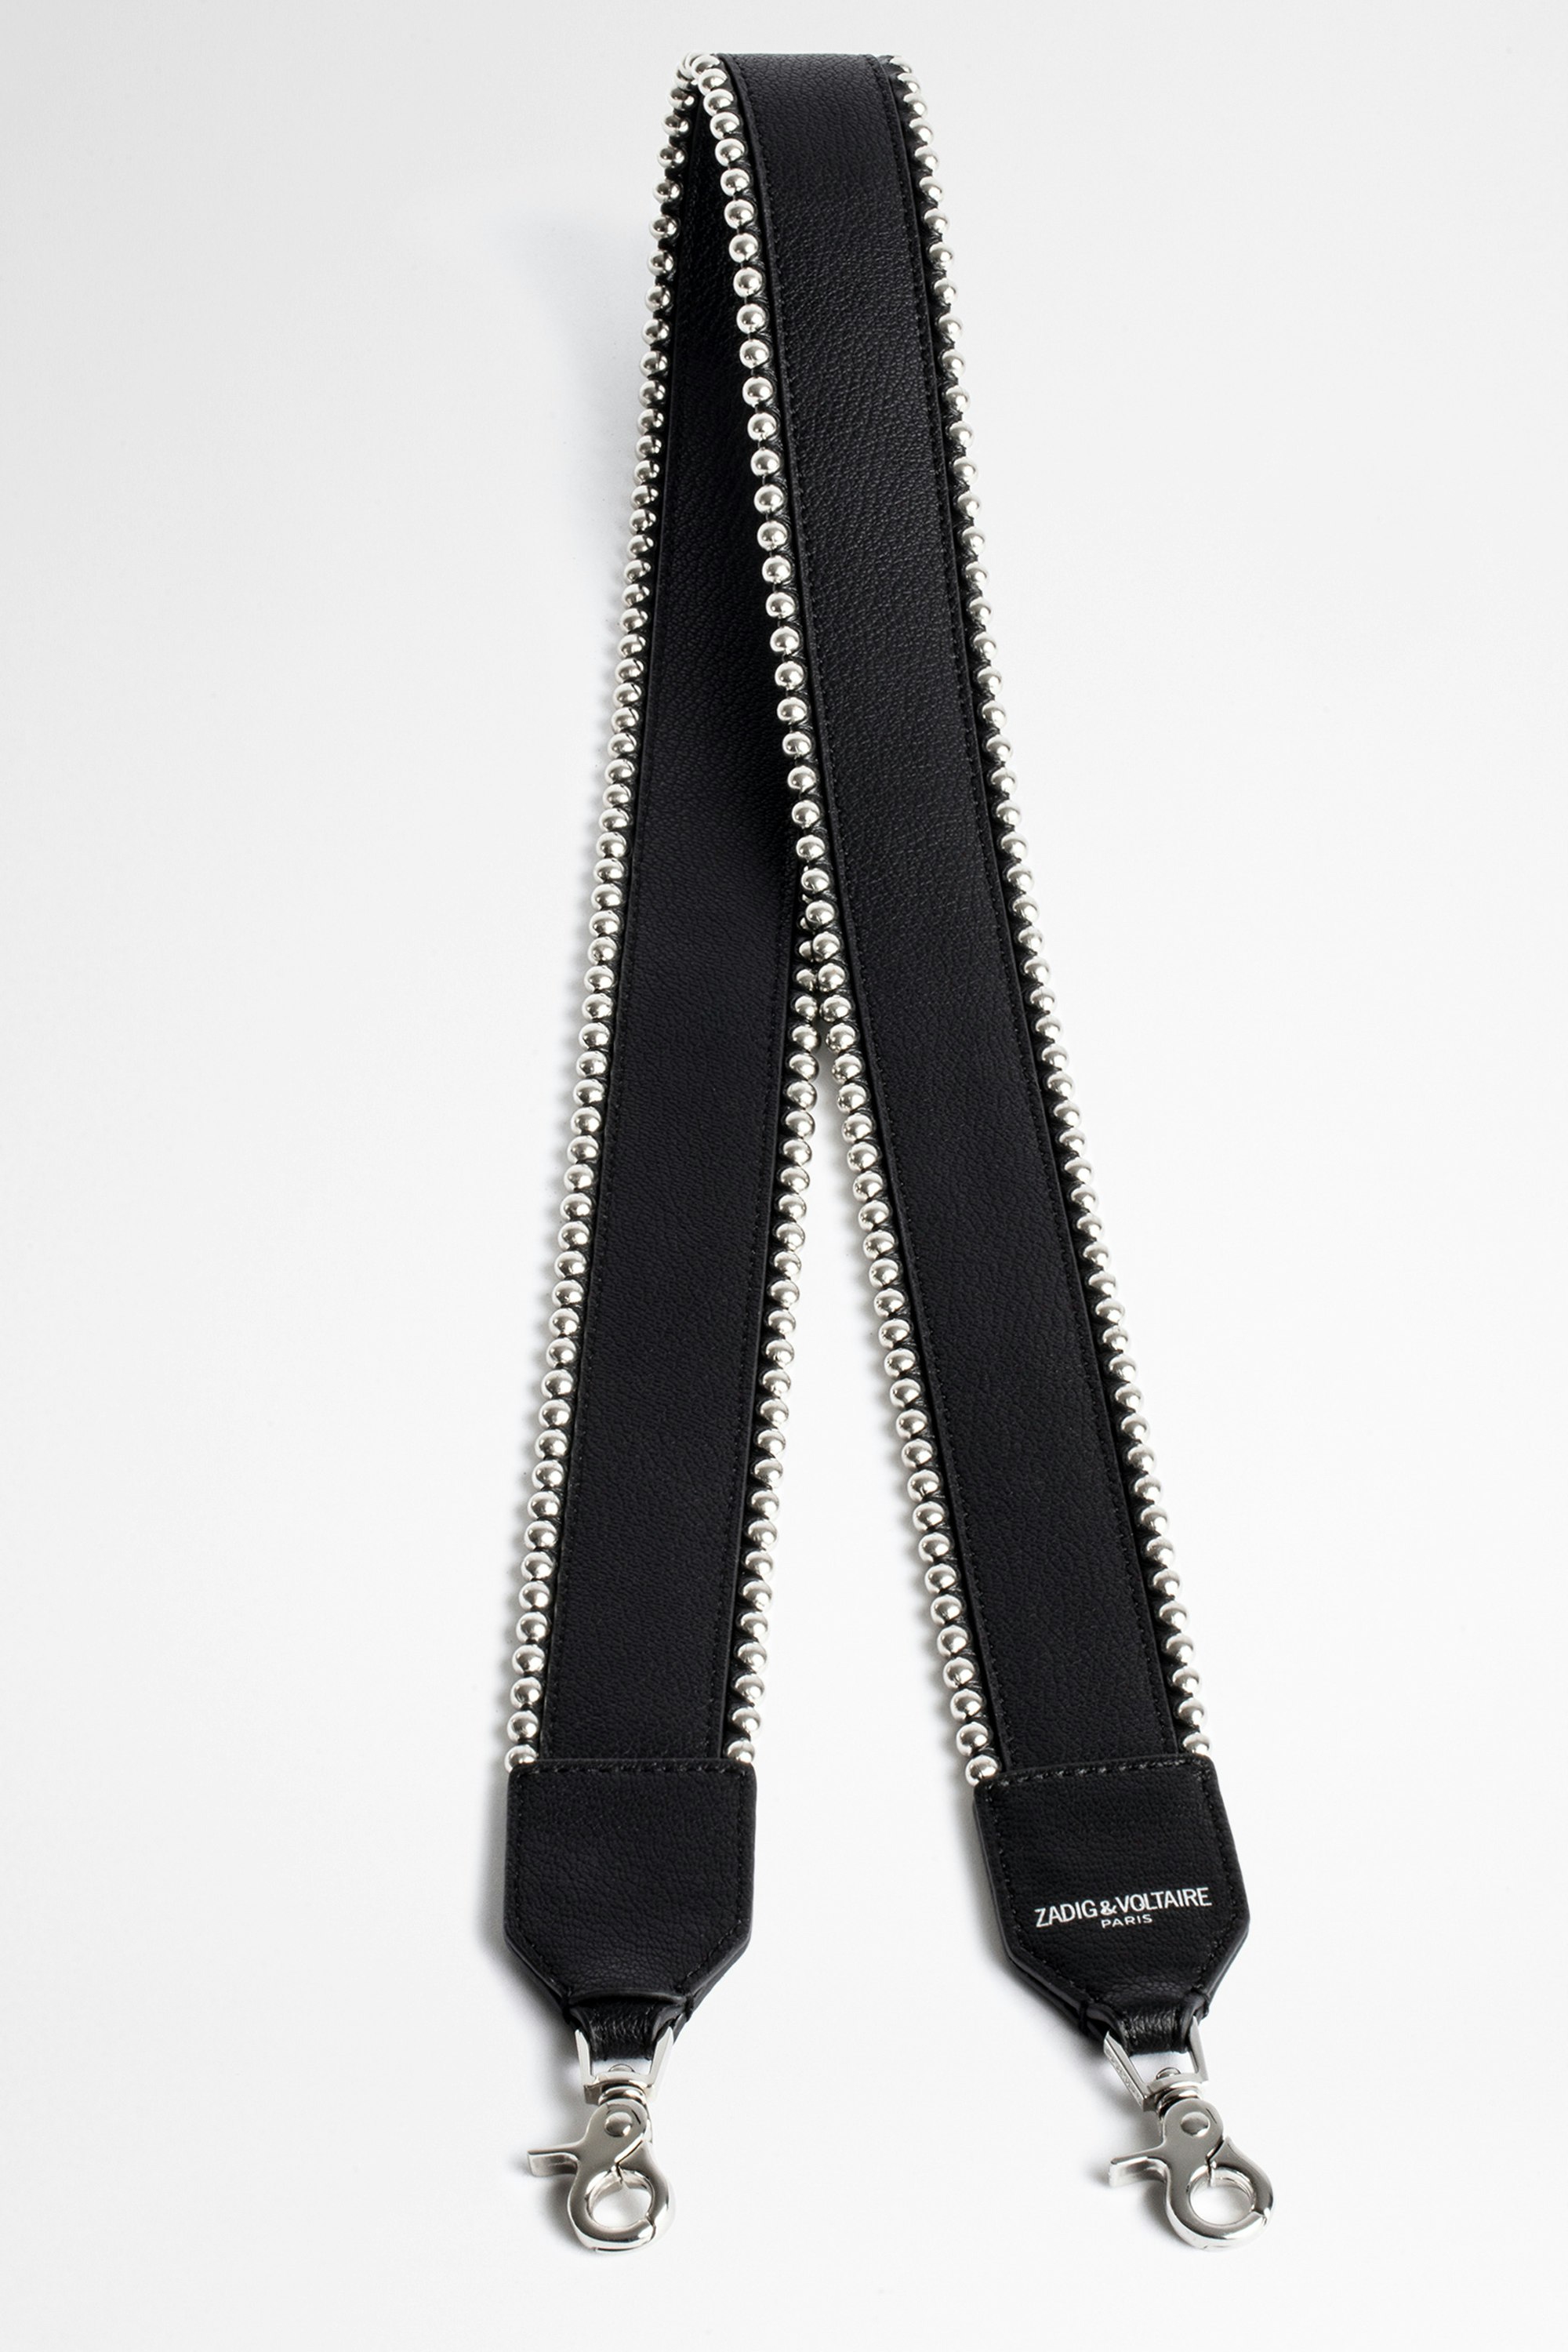 Stud Piping Shoulder Strap Black leather shoulder strap